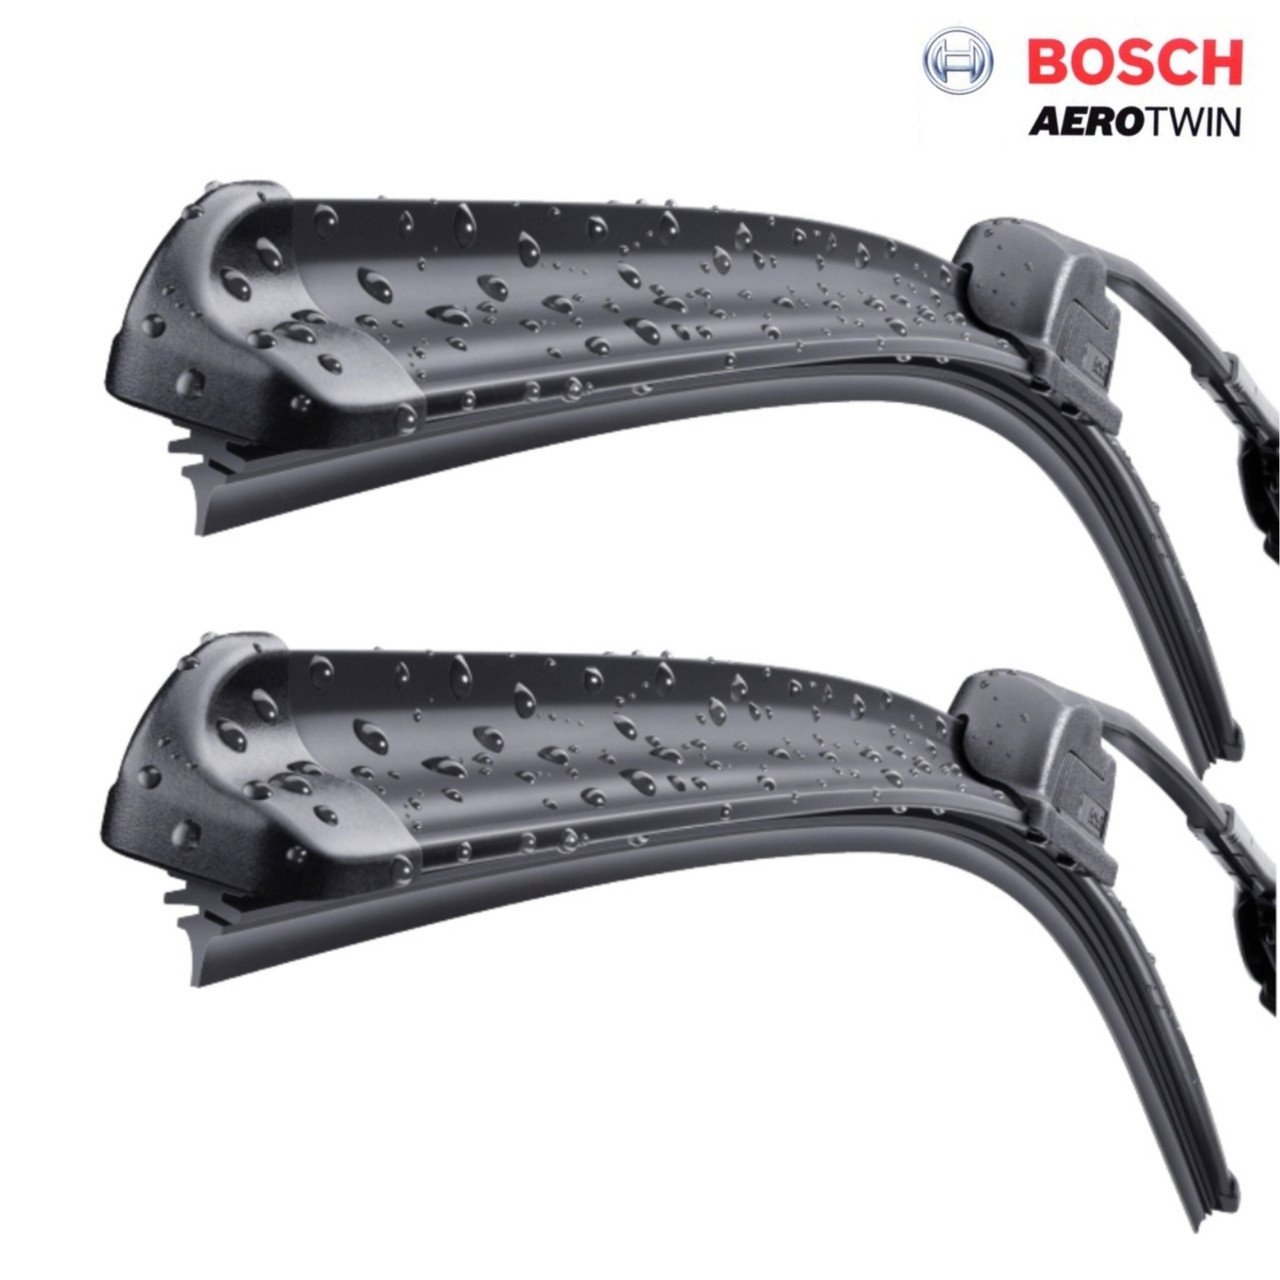 Bosch Aerotwin Wiper Blades 550/ 475mm Upgrade